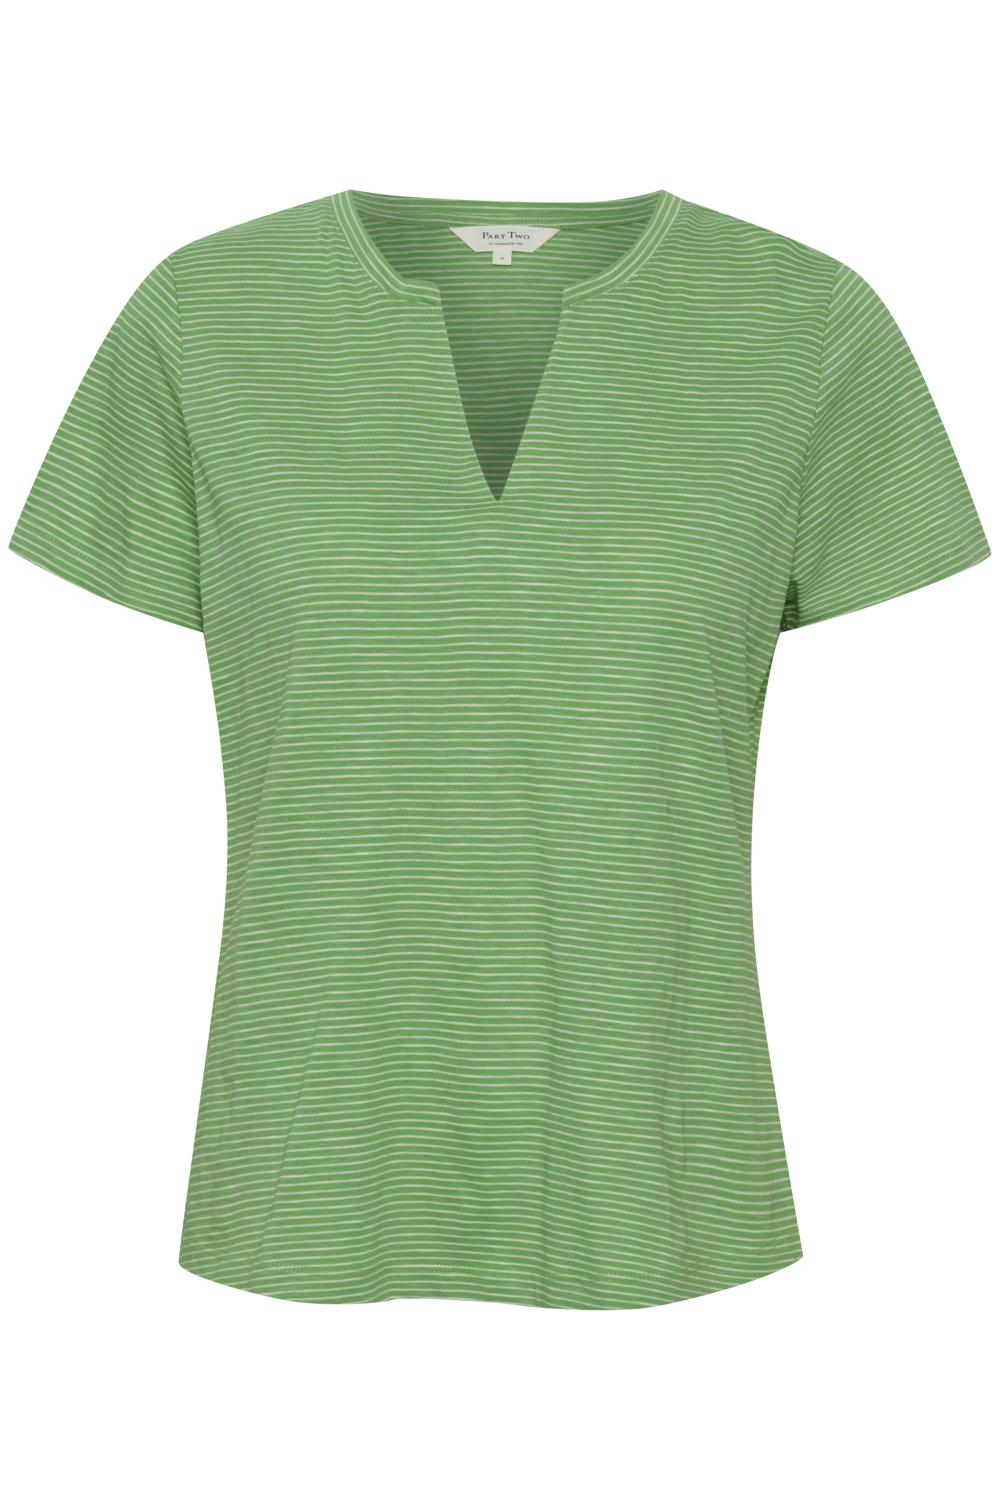 Part Two Gesinas T-shirt, stripet grønn/hvit